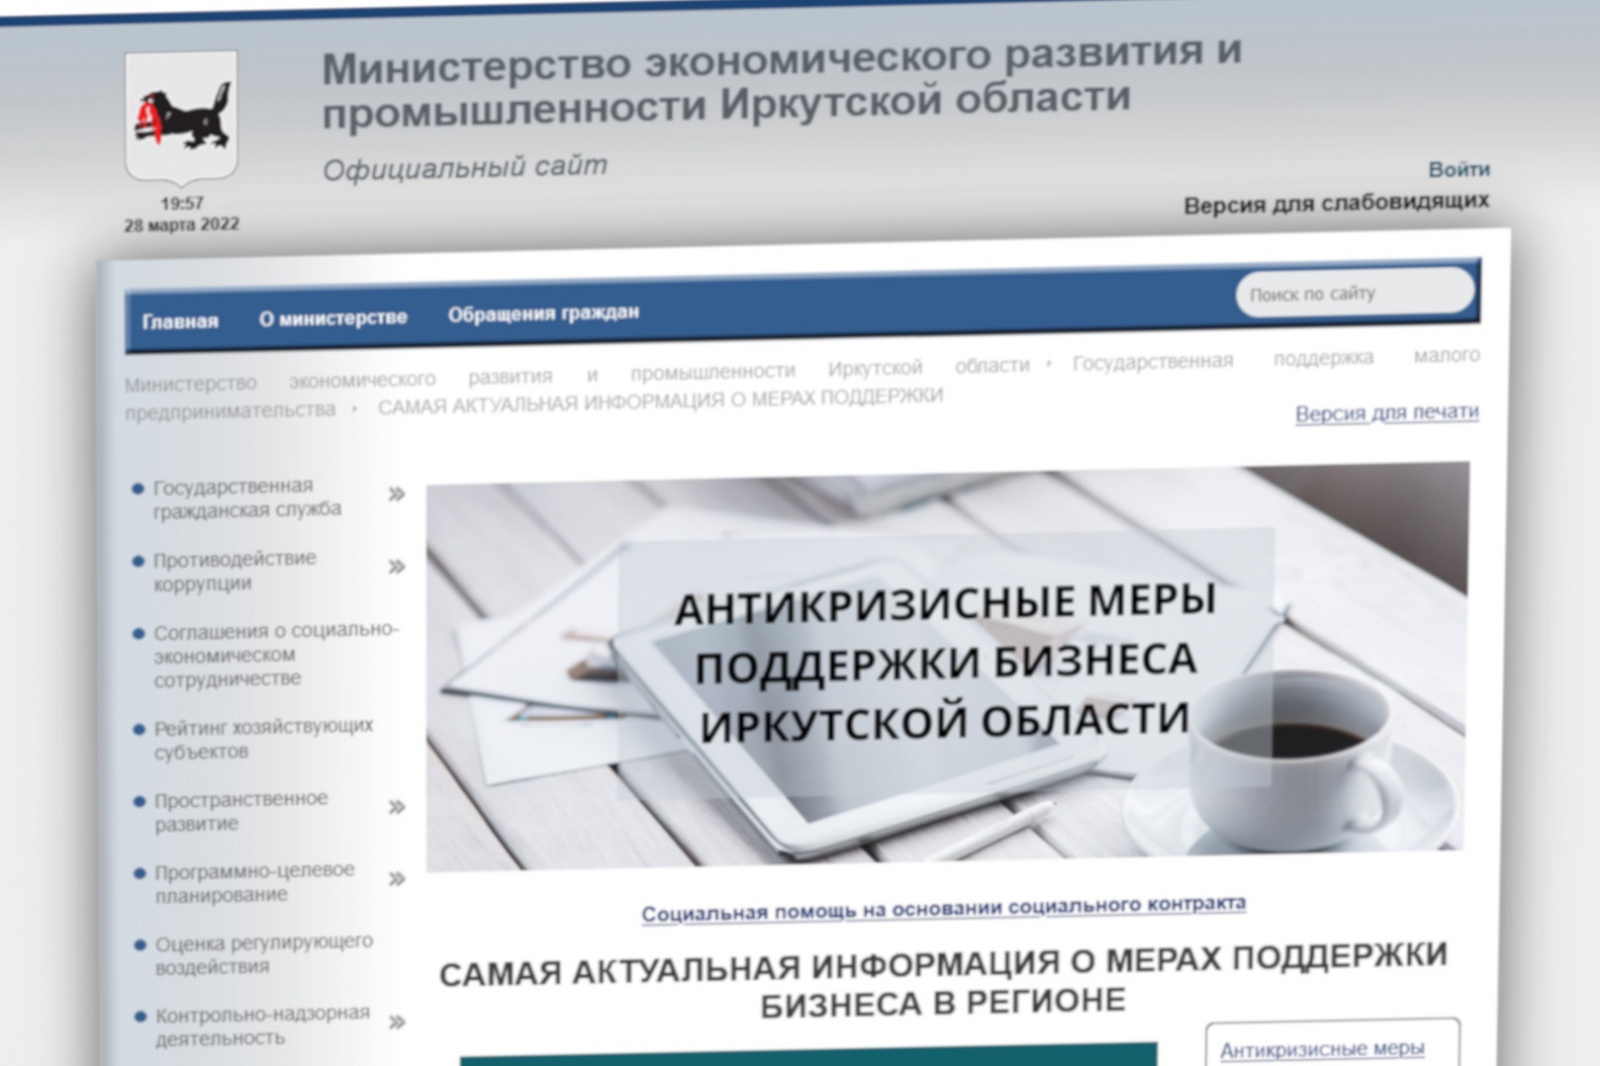 Для предпринимателей Иркутской области подготовлен полный перечень мер поддержки бизнеса